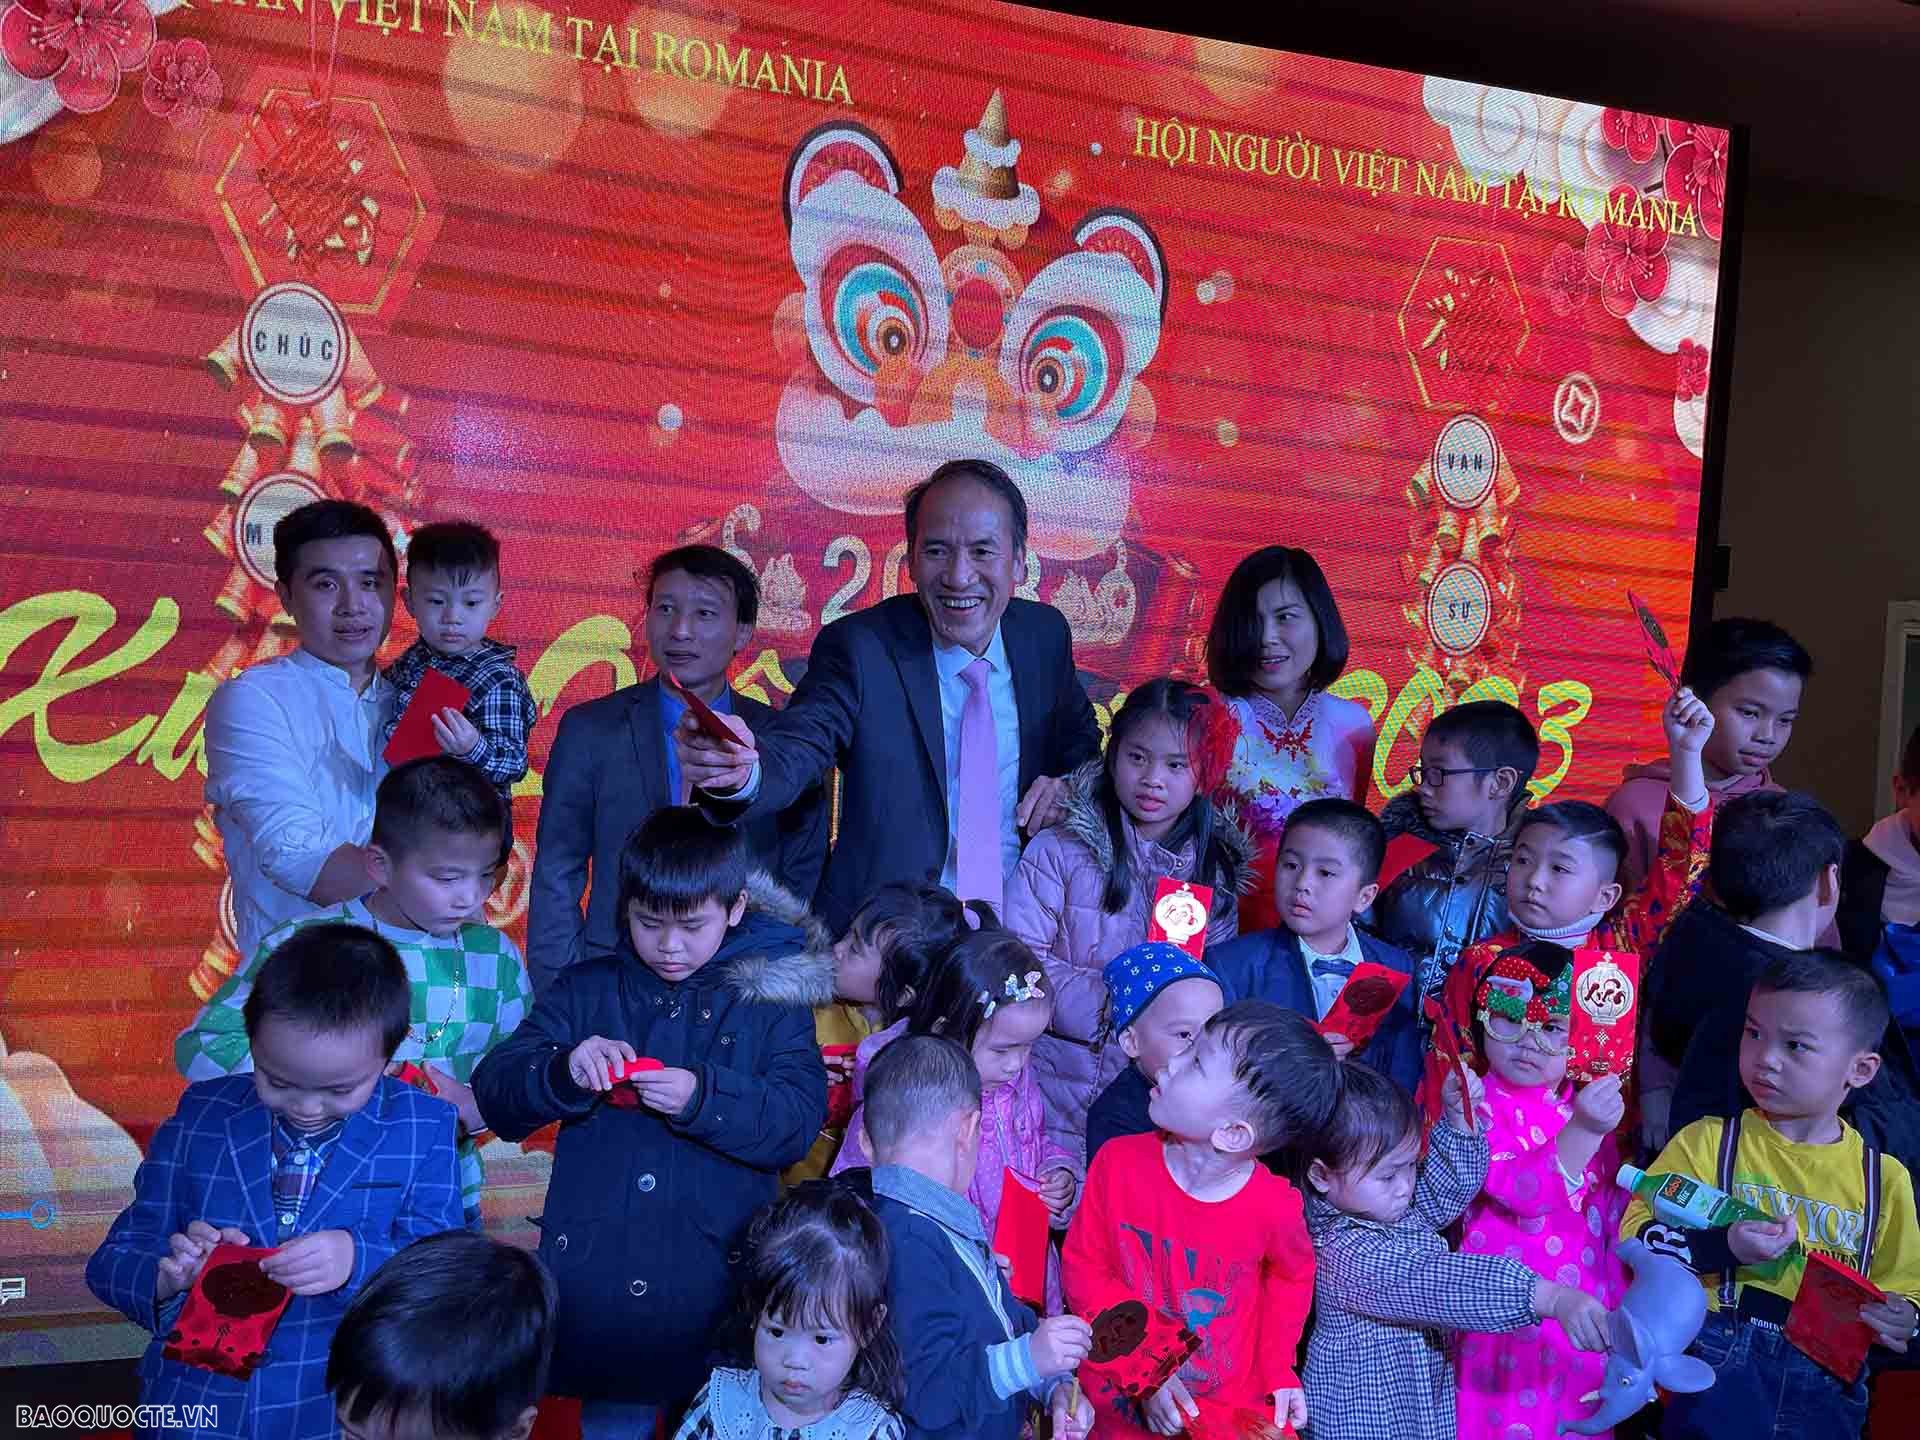 Cộng đồng người Việt Nam tại Romania đón Xuân Quê hương